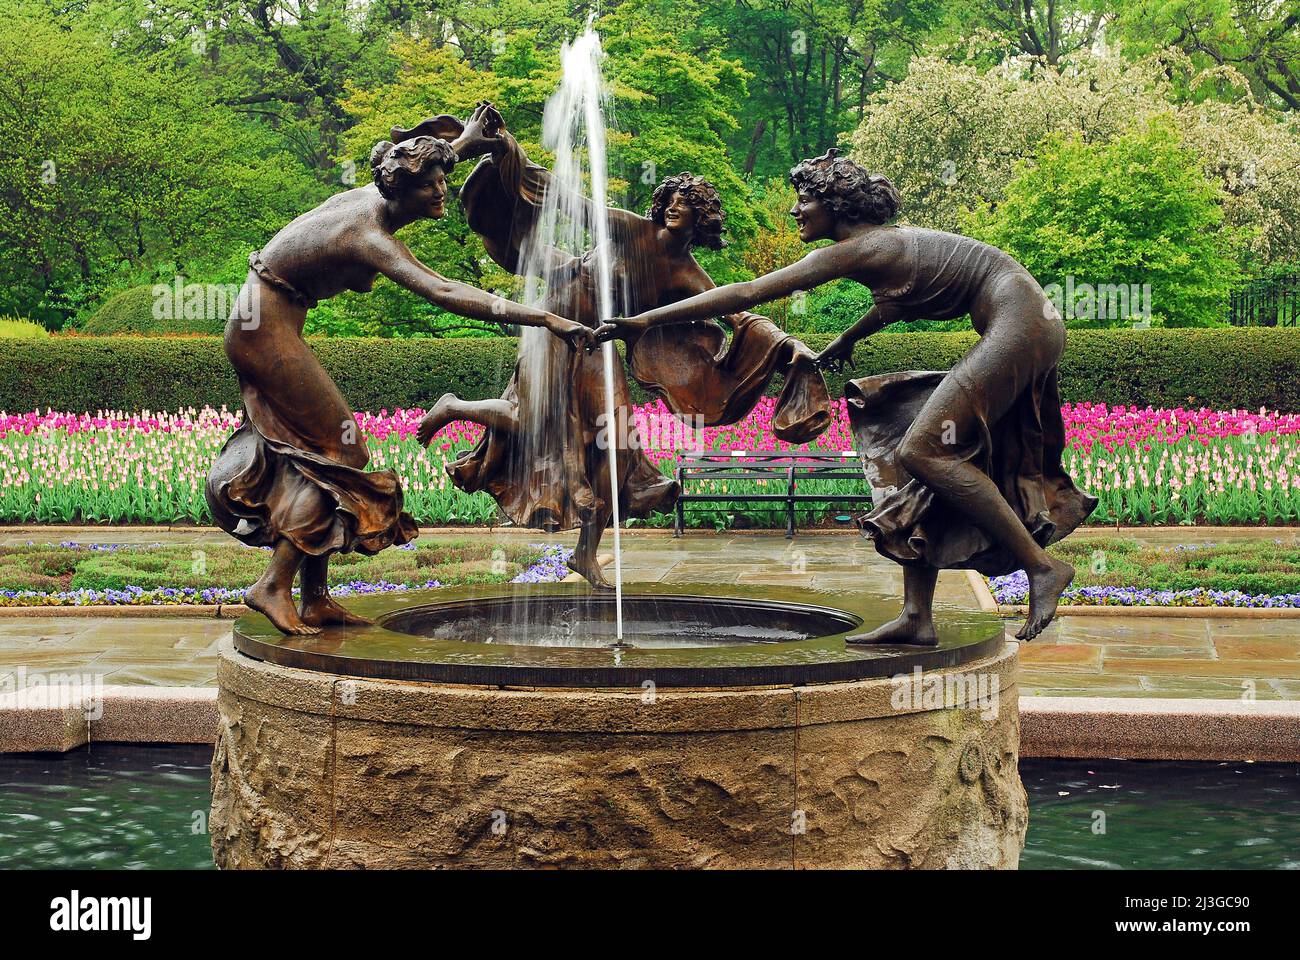 La sculpture de trois nymphes dansants entourant une fontaine met en valeur les jardins du Conservatory Gardens of New York Central Park au printemps Banque D'Images